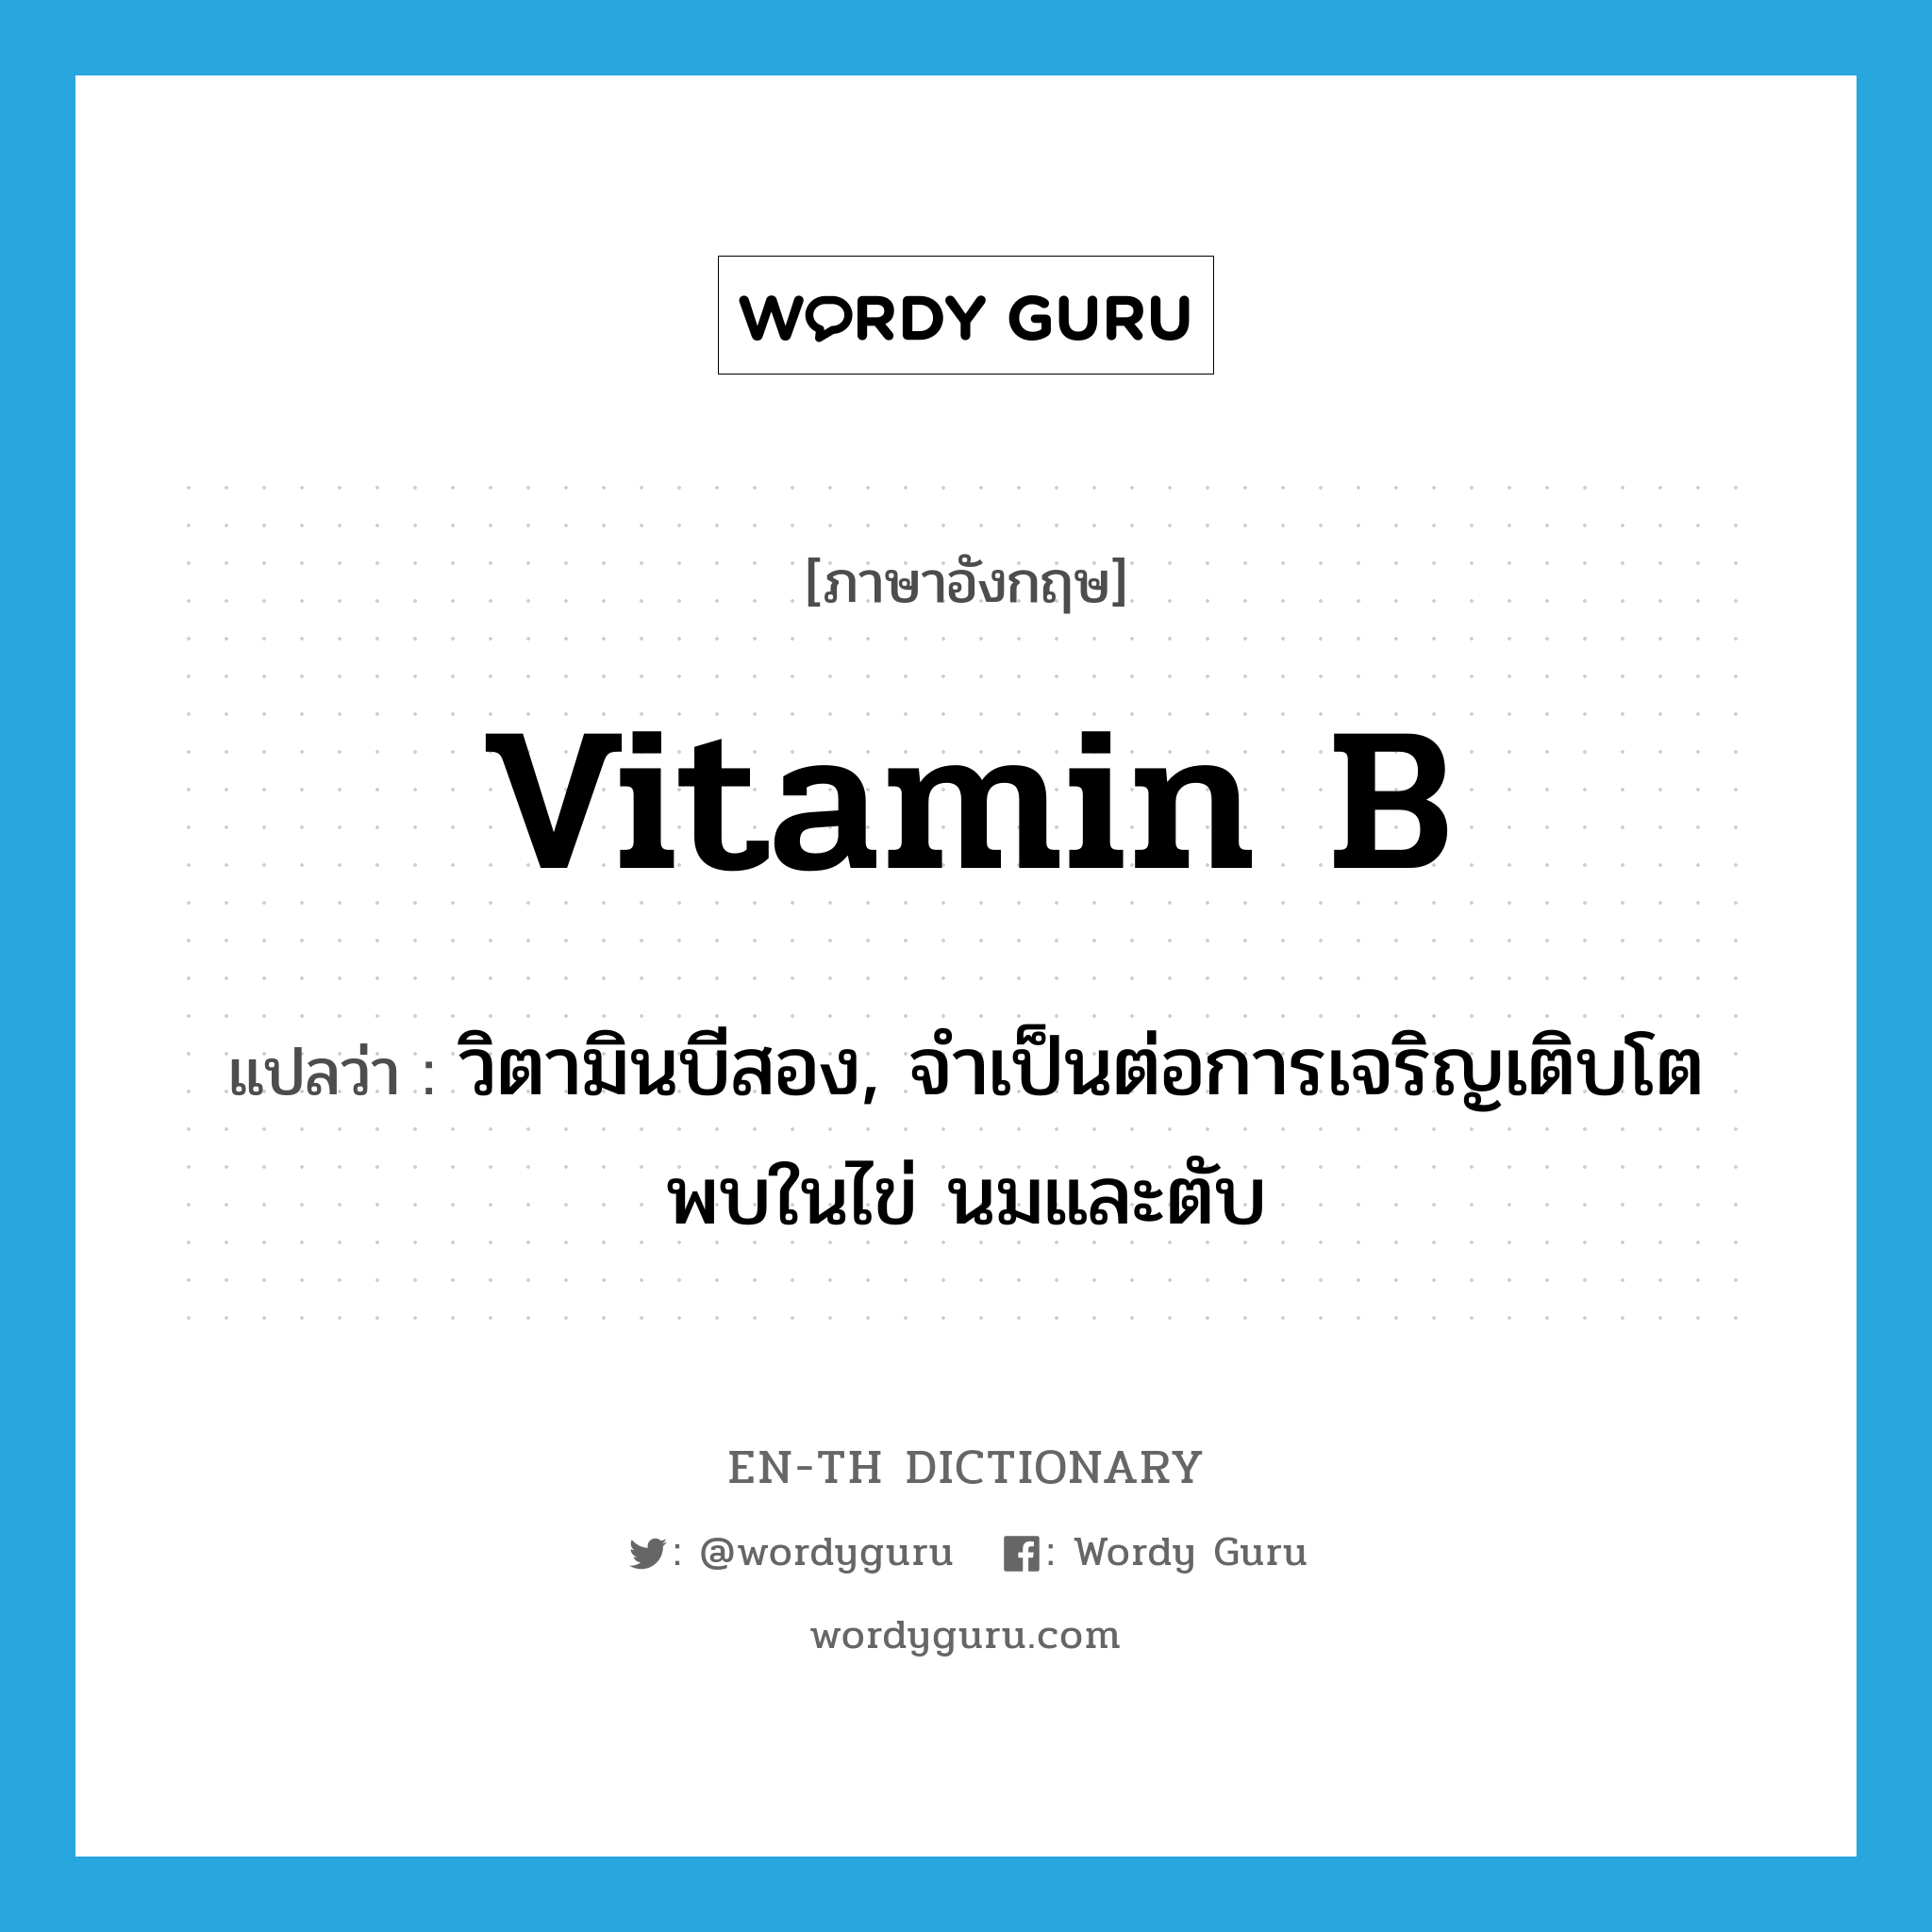 vitamin B แปลว่า?, คำศัพท์ภาษาอังกฤษ vitamin B แปลว่า วิตามินบีสอง, จำเป็นต่อการเจริญเติบโต พบในไข่ นมและตับ ประเภท N หมวด N